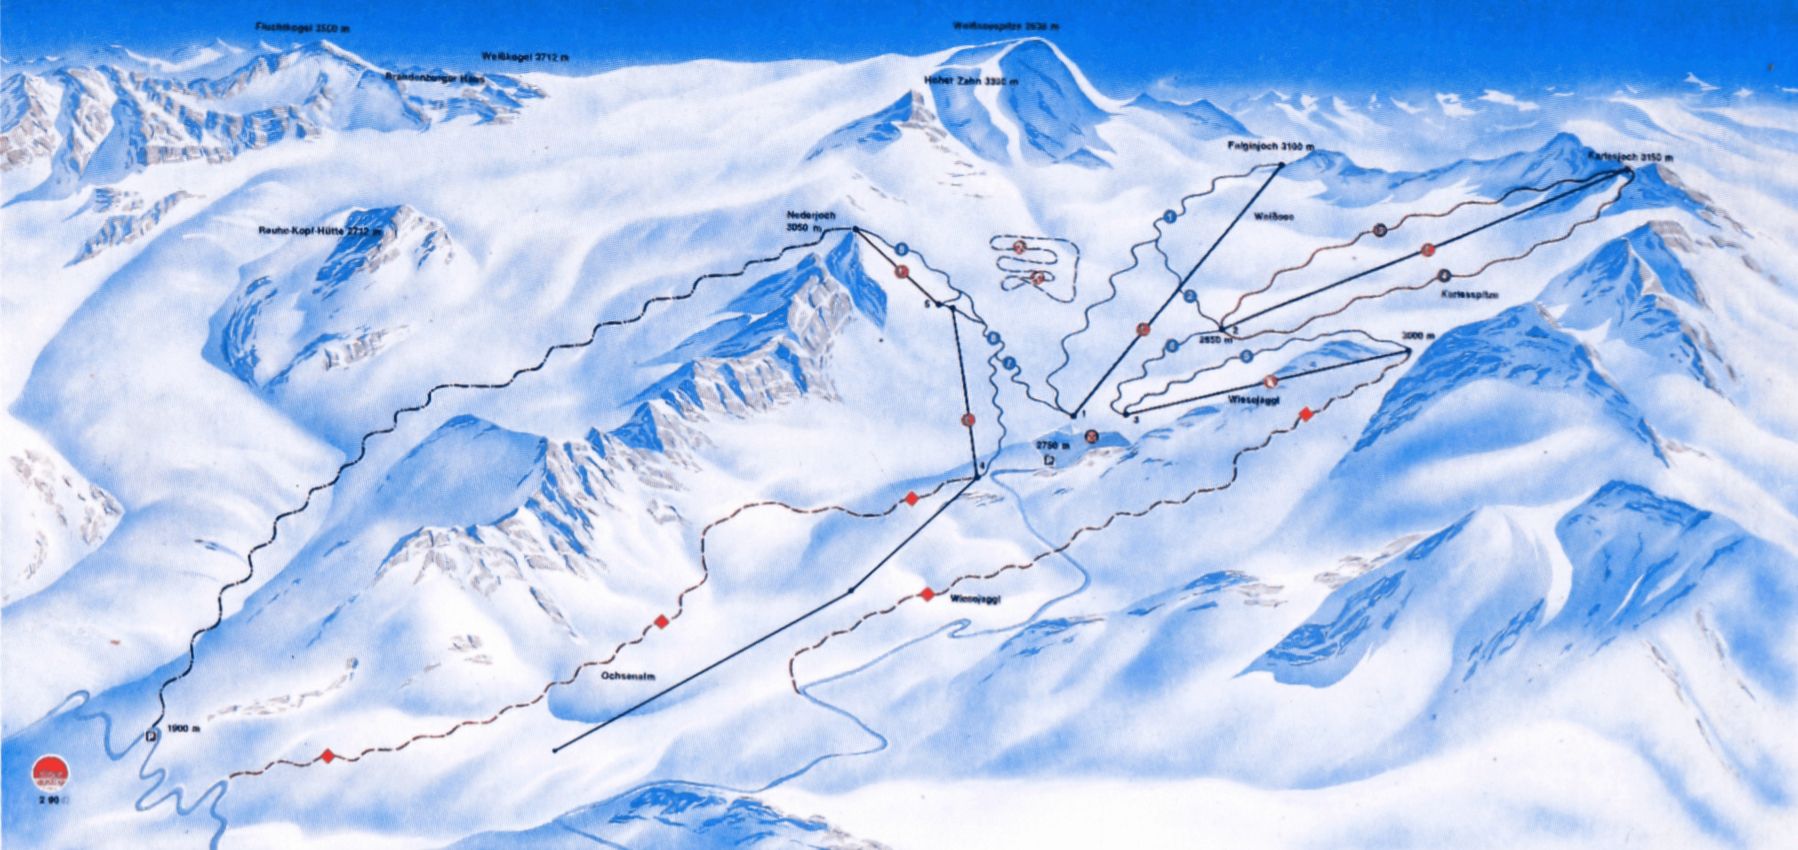 Een pistekaart van het skigebied uit 1990 (skimap.org)